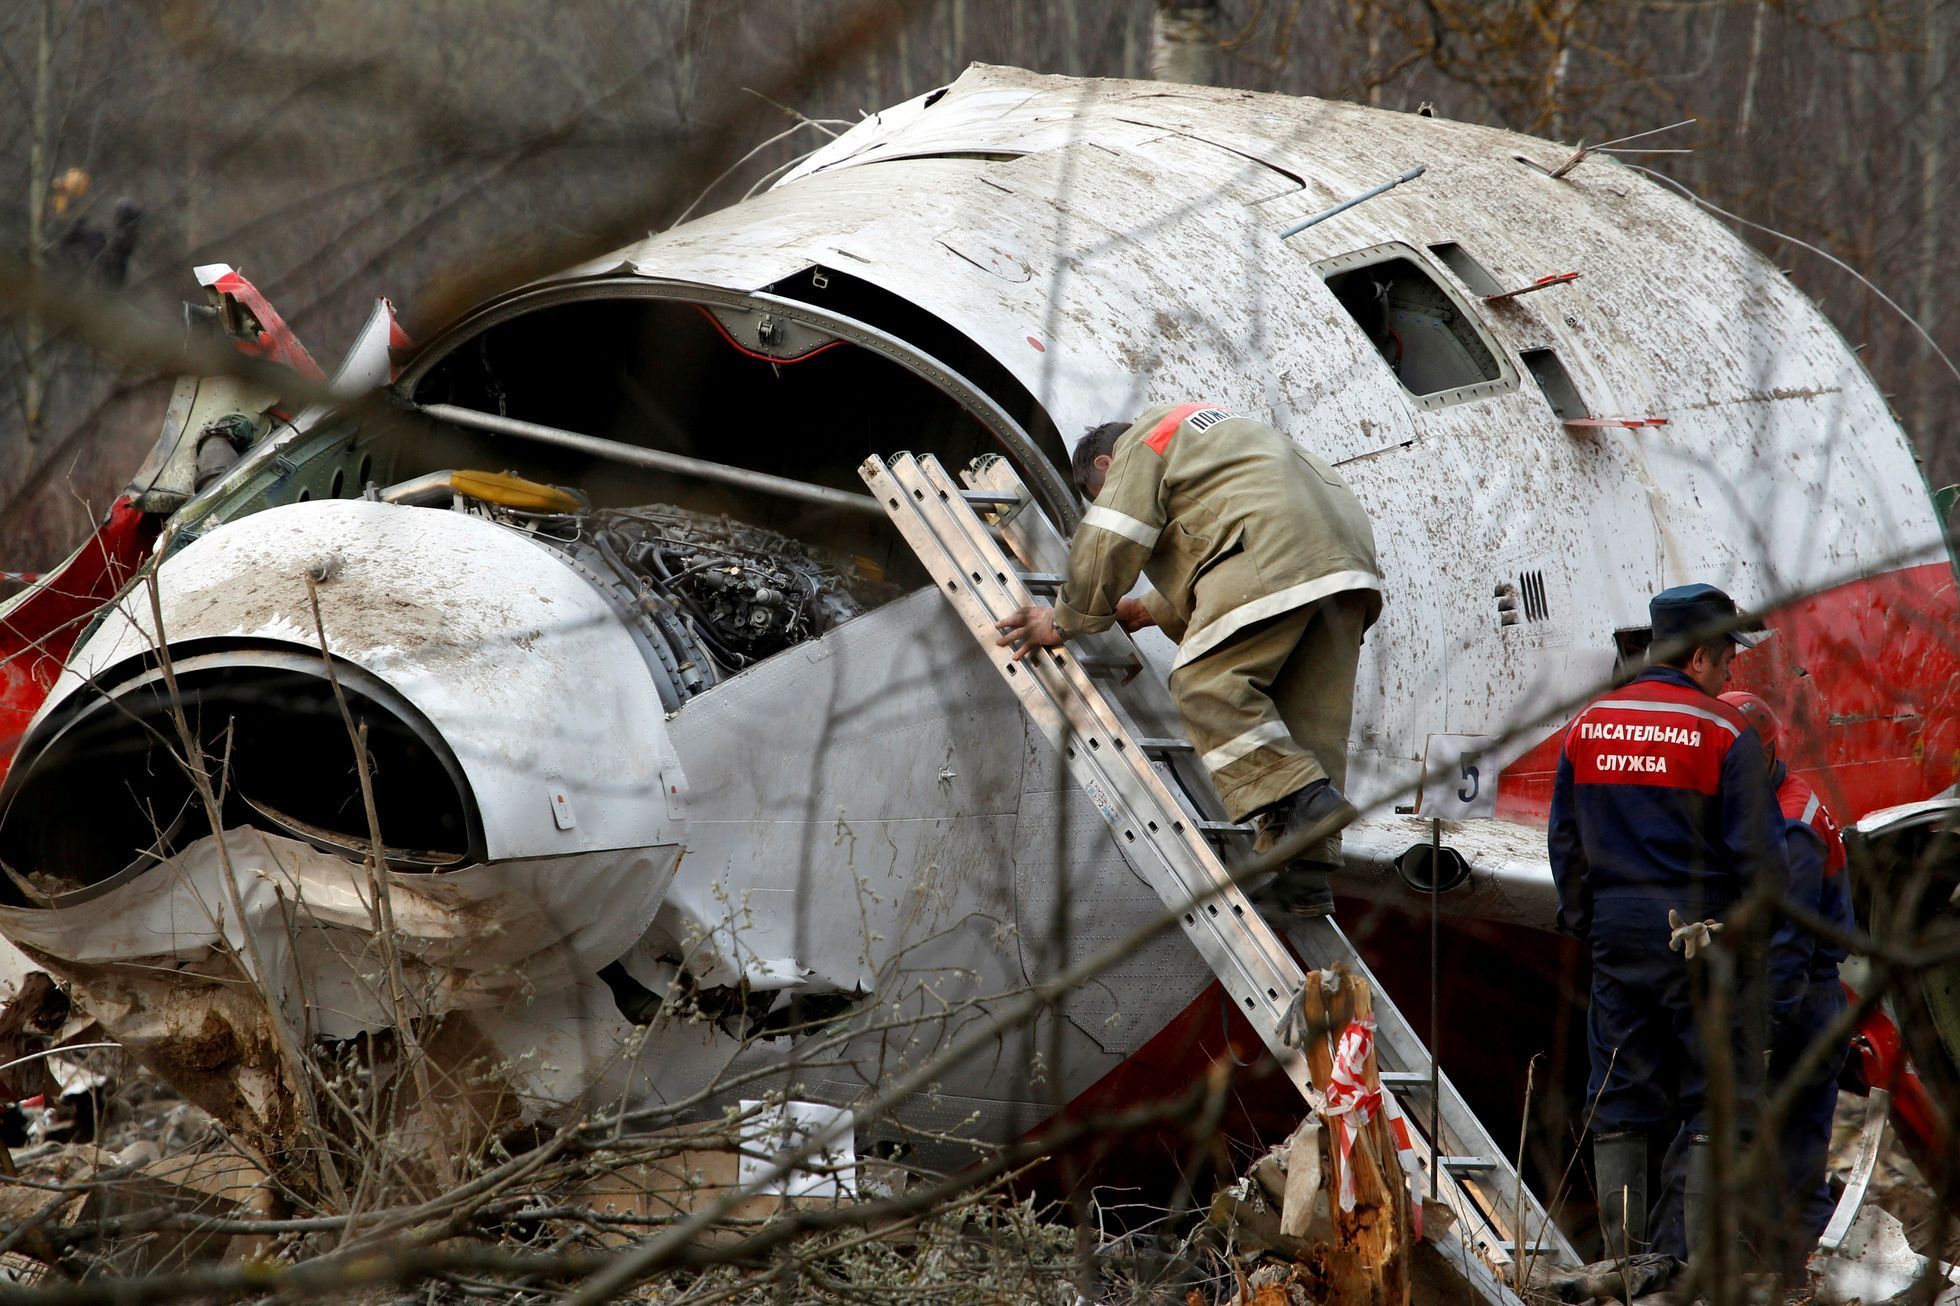 Odborníci sbírají a zkoumají trosky na místě havárie letadla Tupolev Tu-154 ve Smolensku, 13. dubna 2010.